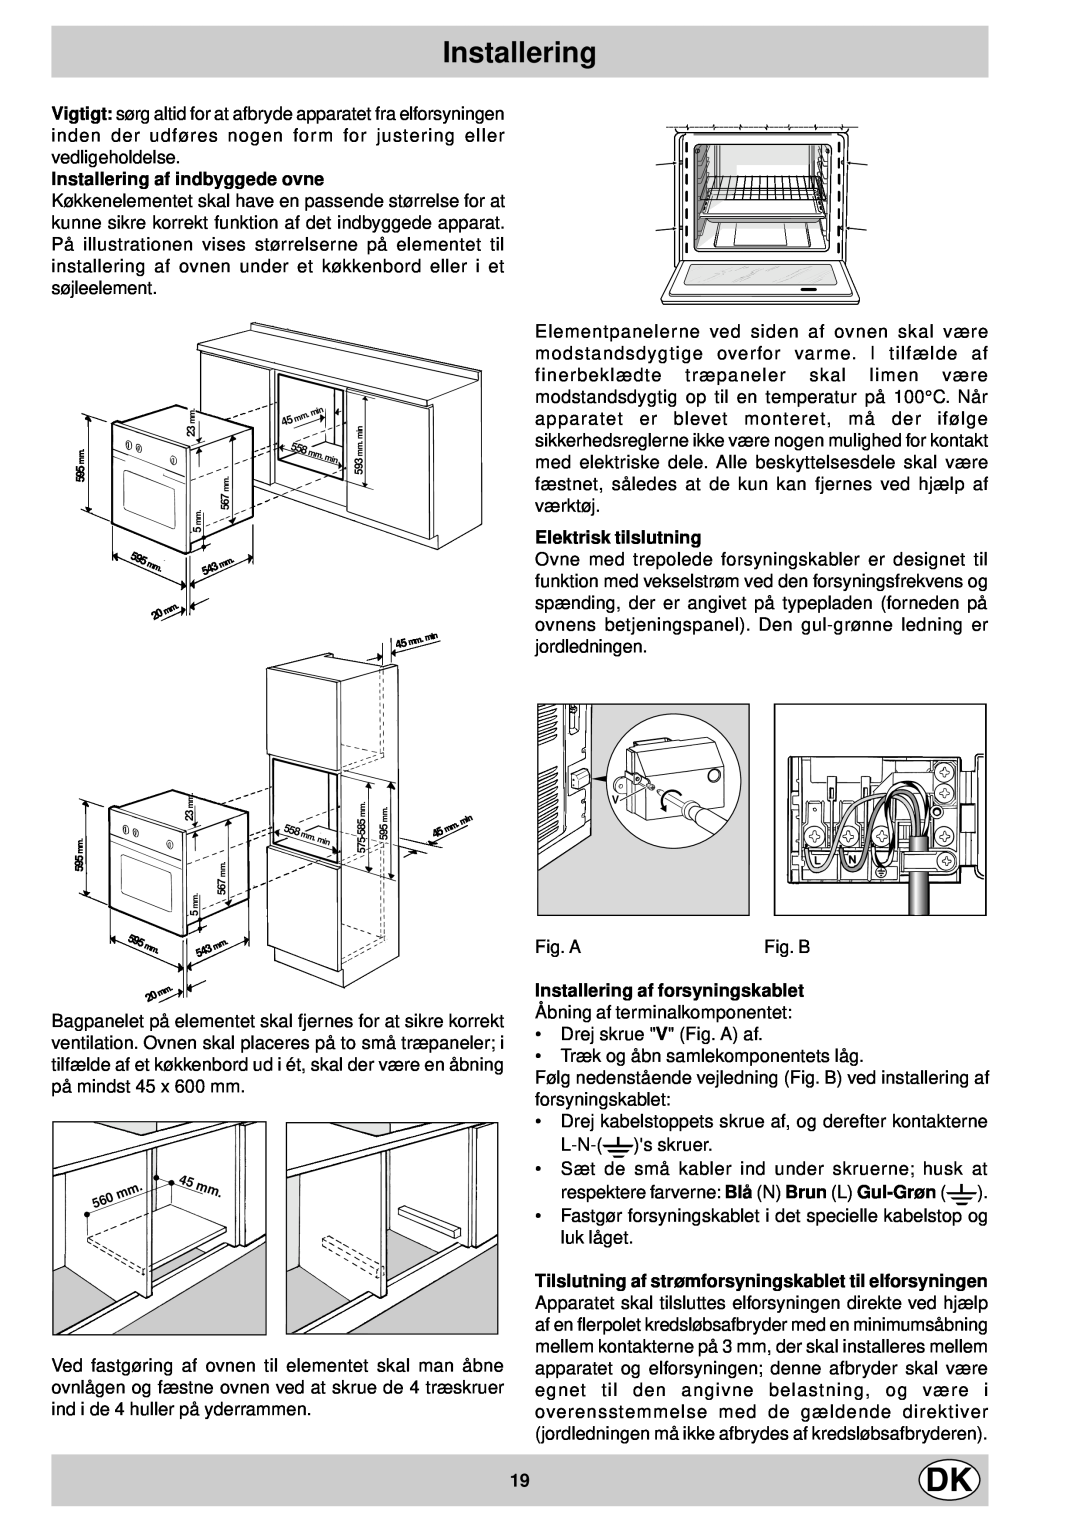 Indesit FM 37K IX DK manual Installering af indbyggede ovne, Elektrisk tilslutning, Installering af forsyningskablet 